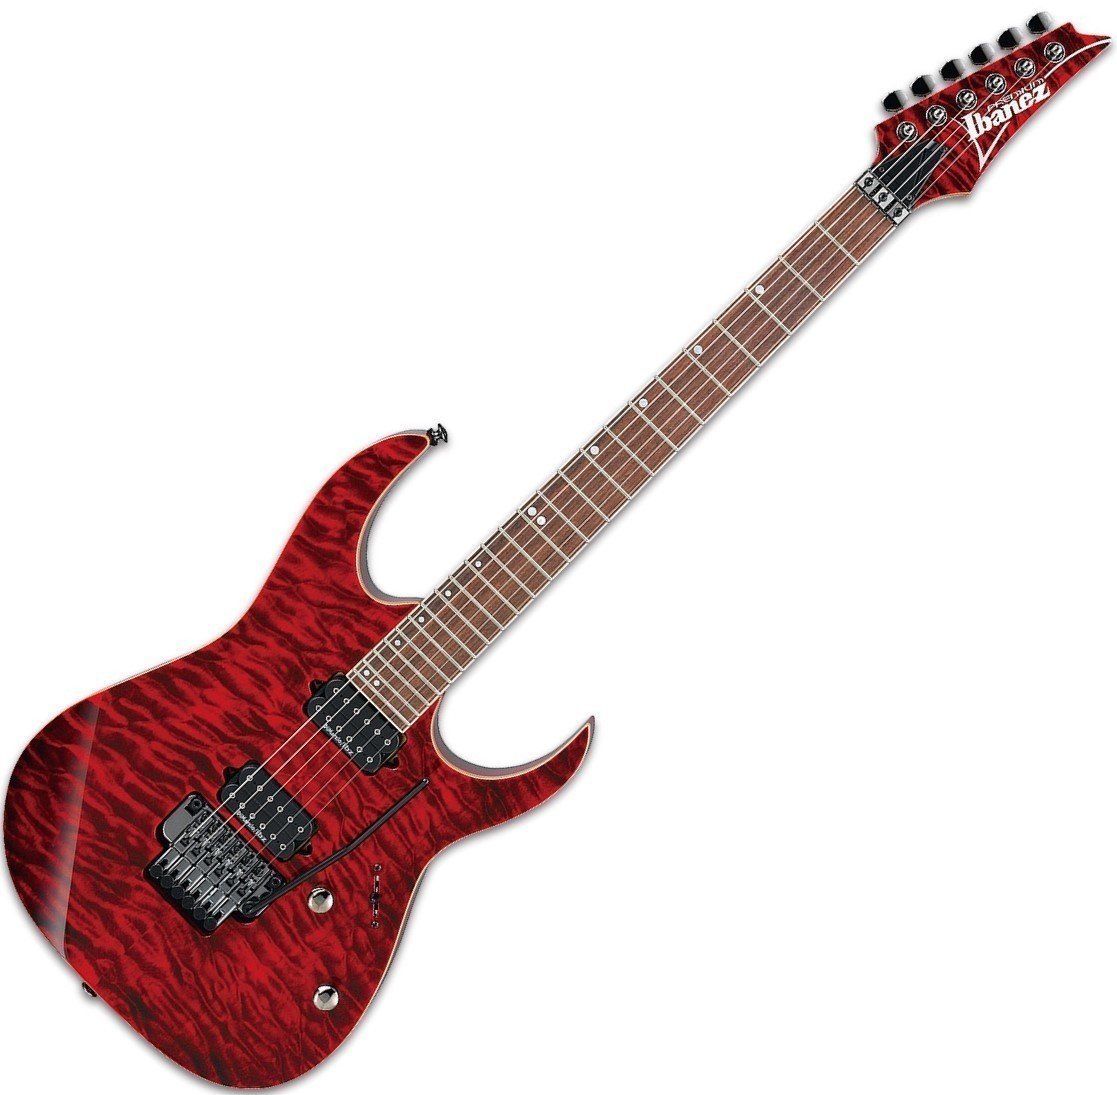 Elektrisk gitarr Ibanez RG920QMZ Premium Red Desert